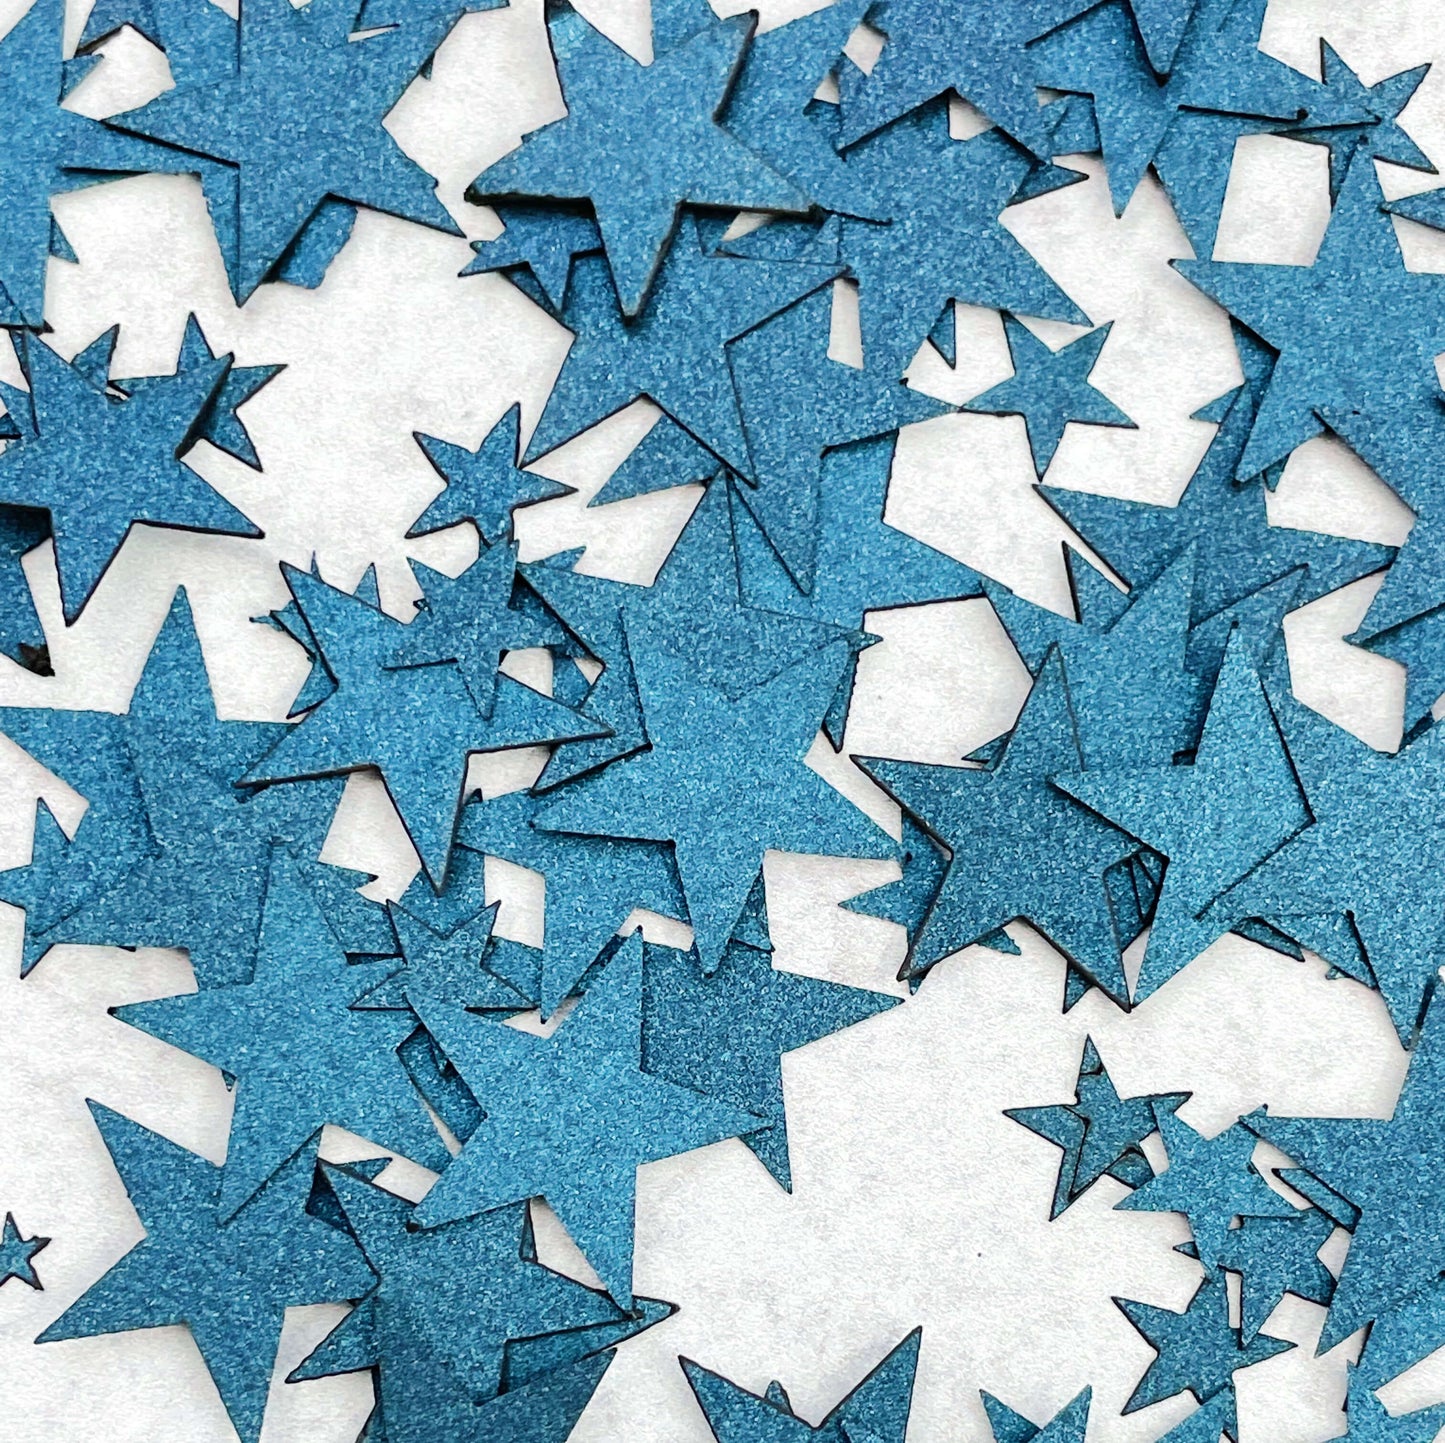 Laser-cut Star Confetti